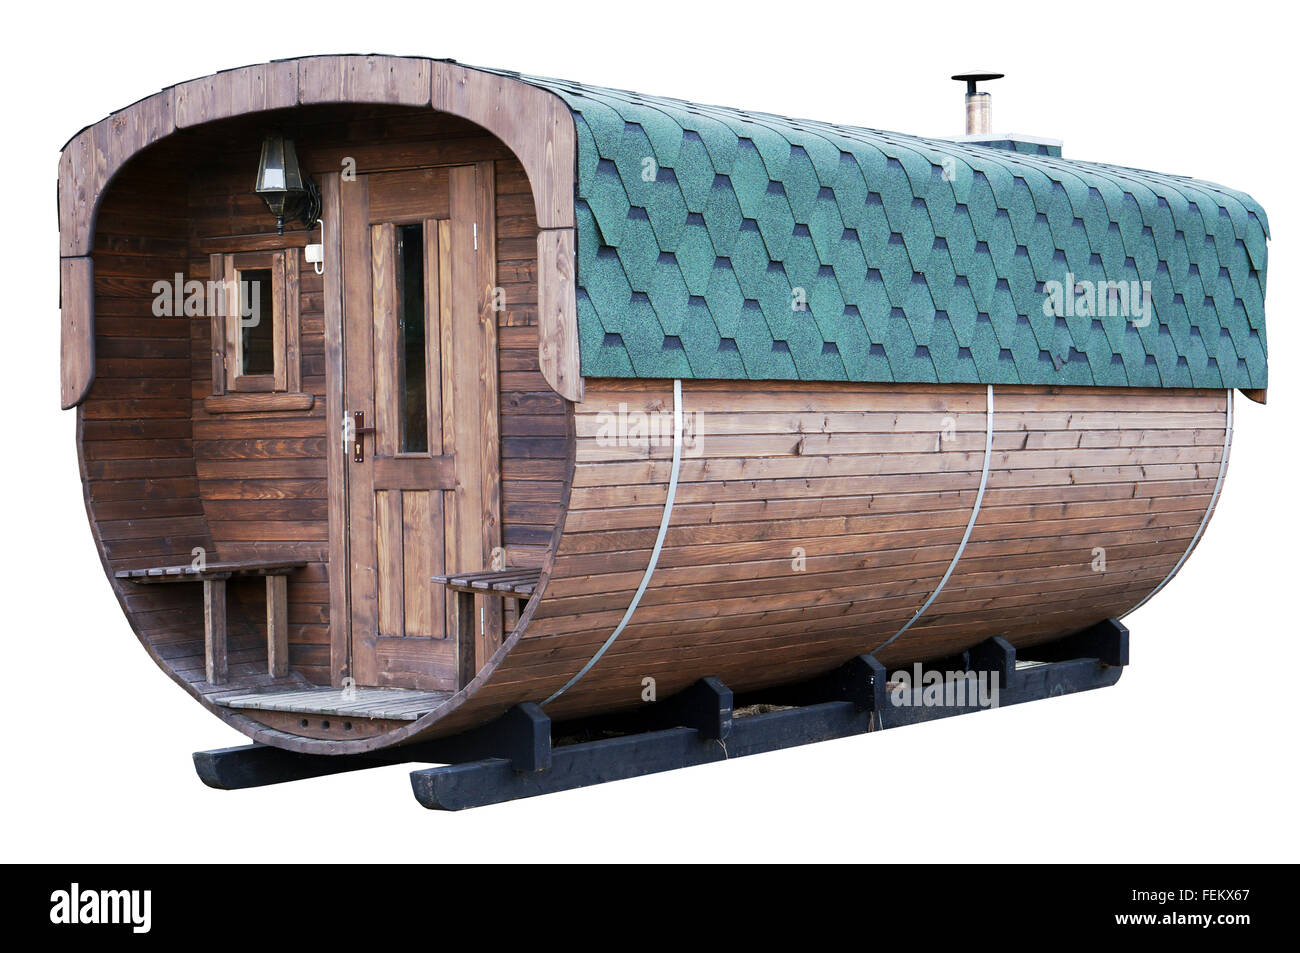 La production de masse en bois sur ossature mobile baignoire en milieu rural style rustique est présentée sous la forme d'un baril. Isolé Banque D'Images